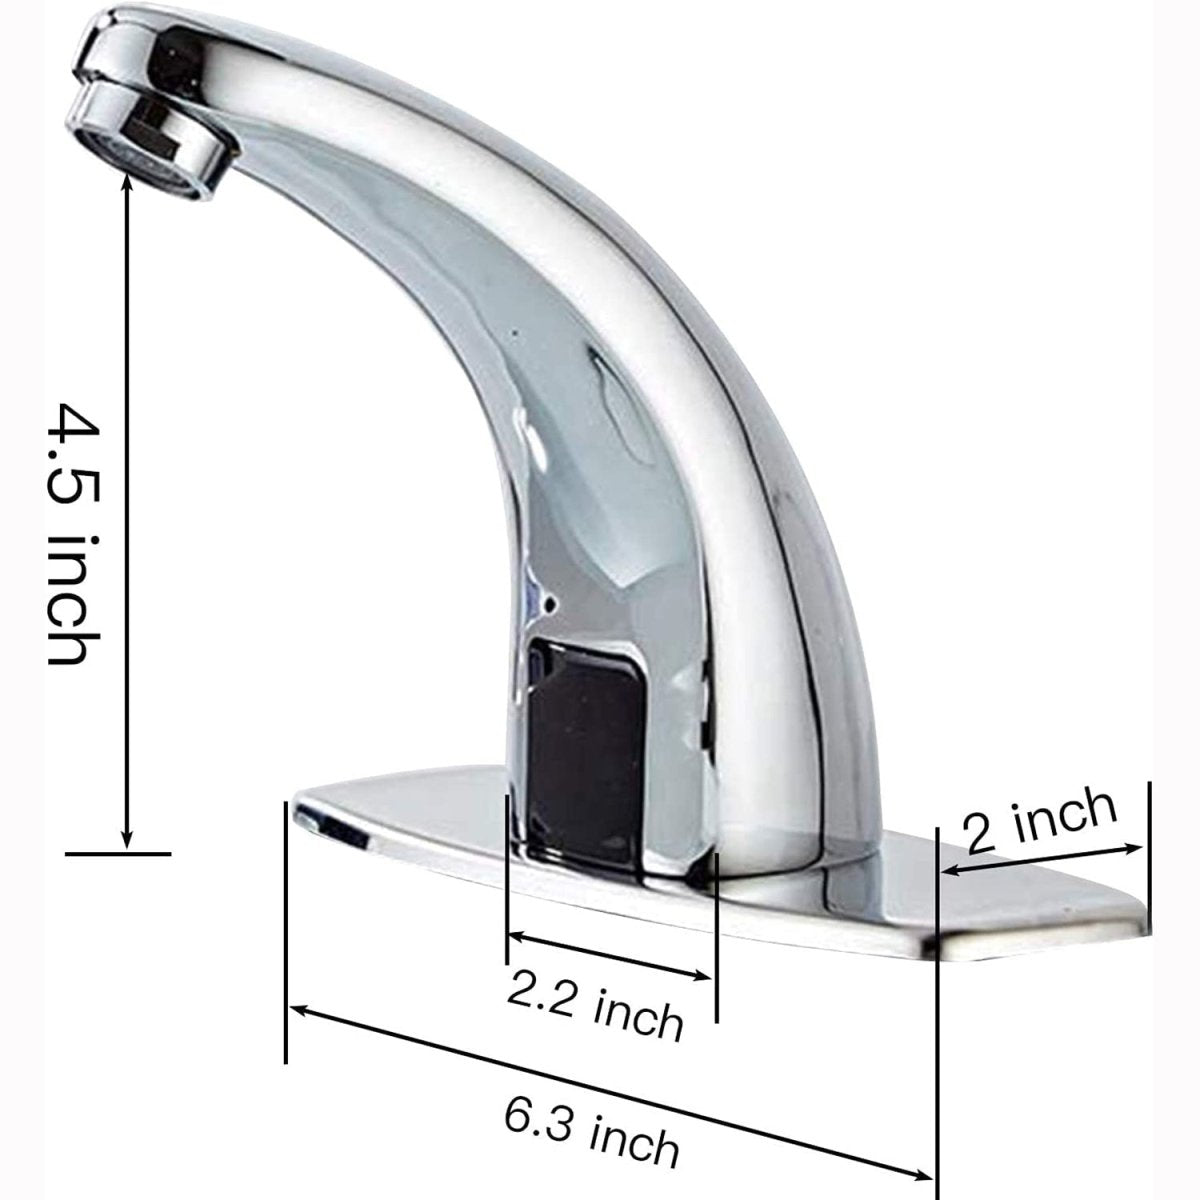 Automatic Sensor Touchless Bathroom Sink Faucet Chrome-1 - buyfaucet.com